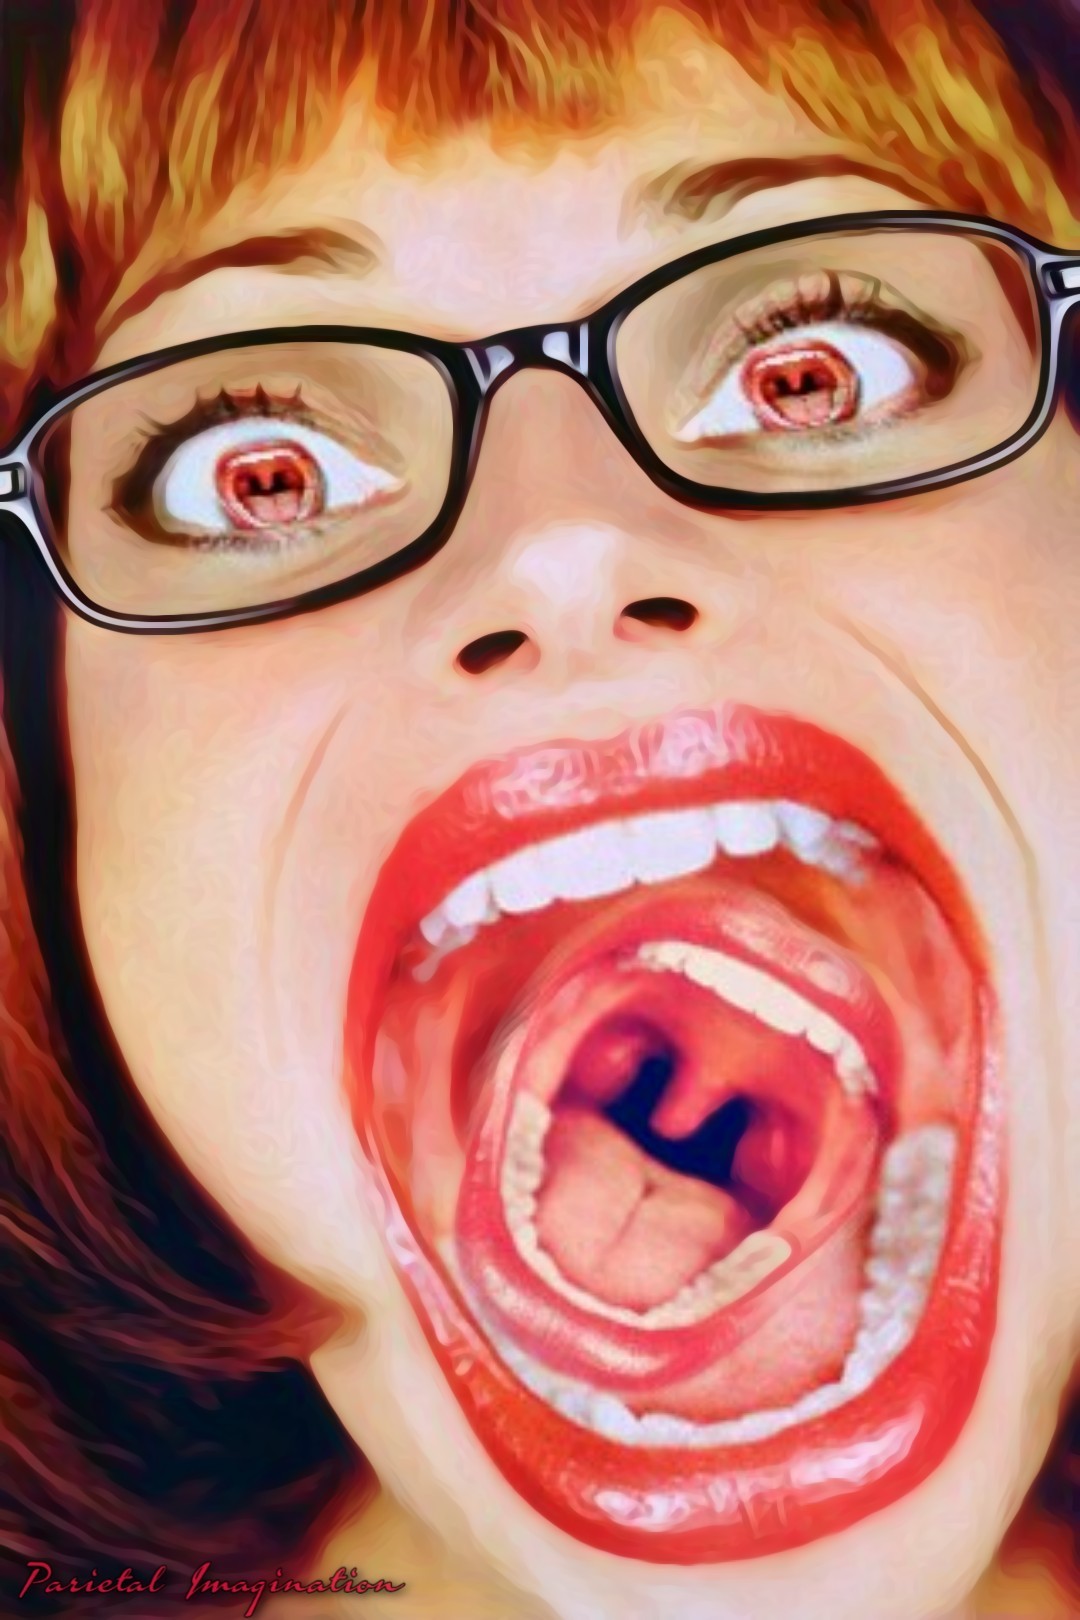 фото открытого женского рта